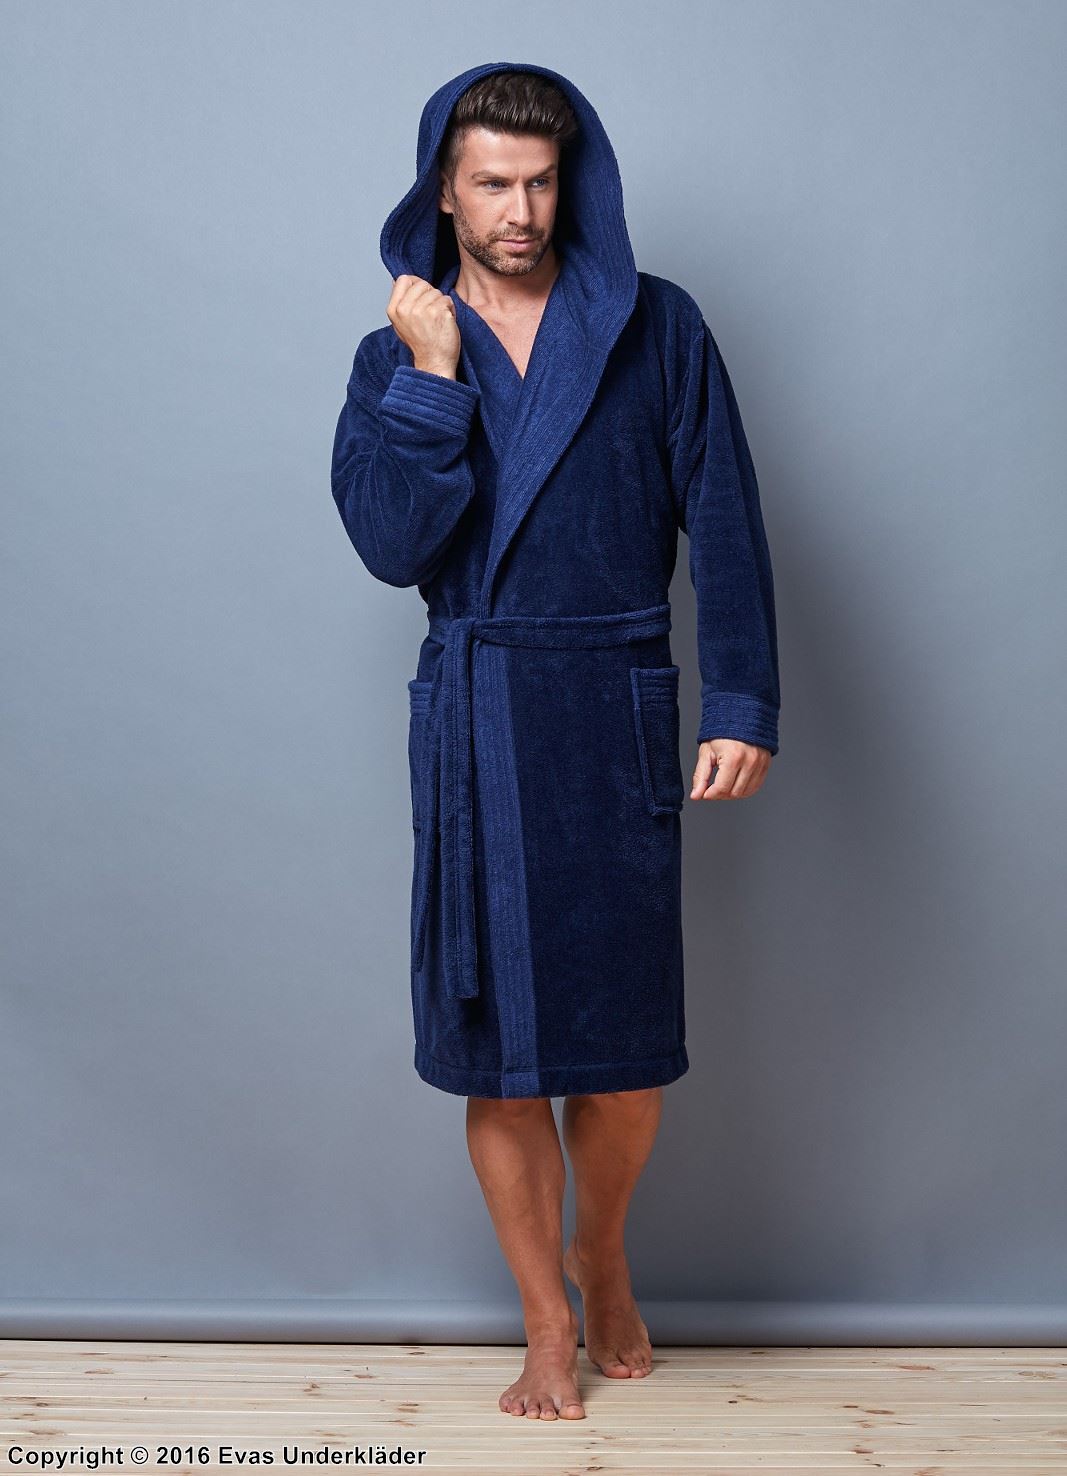 Men's bathrobe, long sleeves, pockets, hood